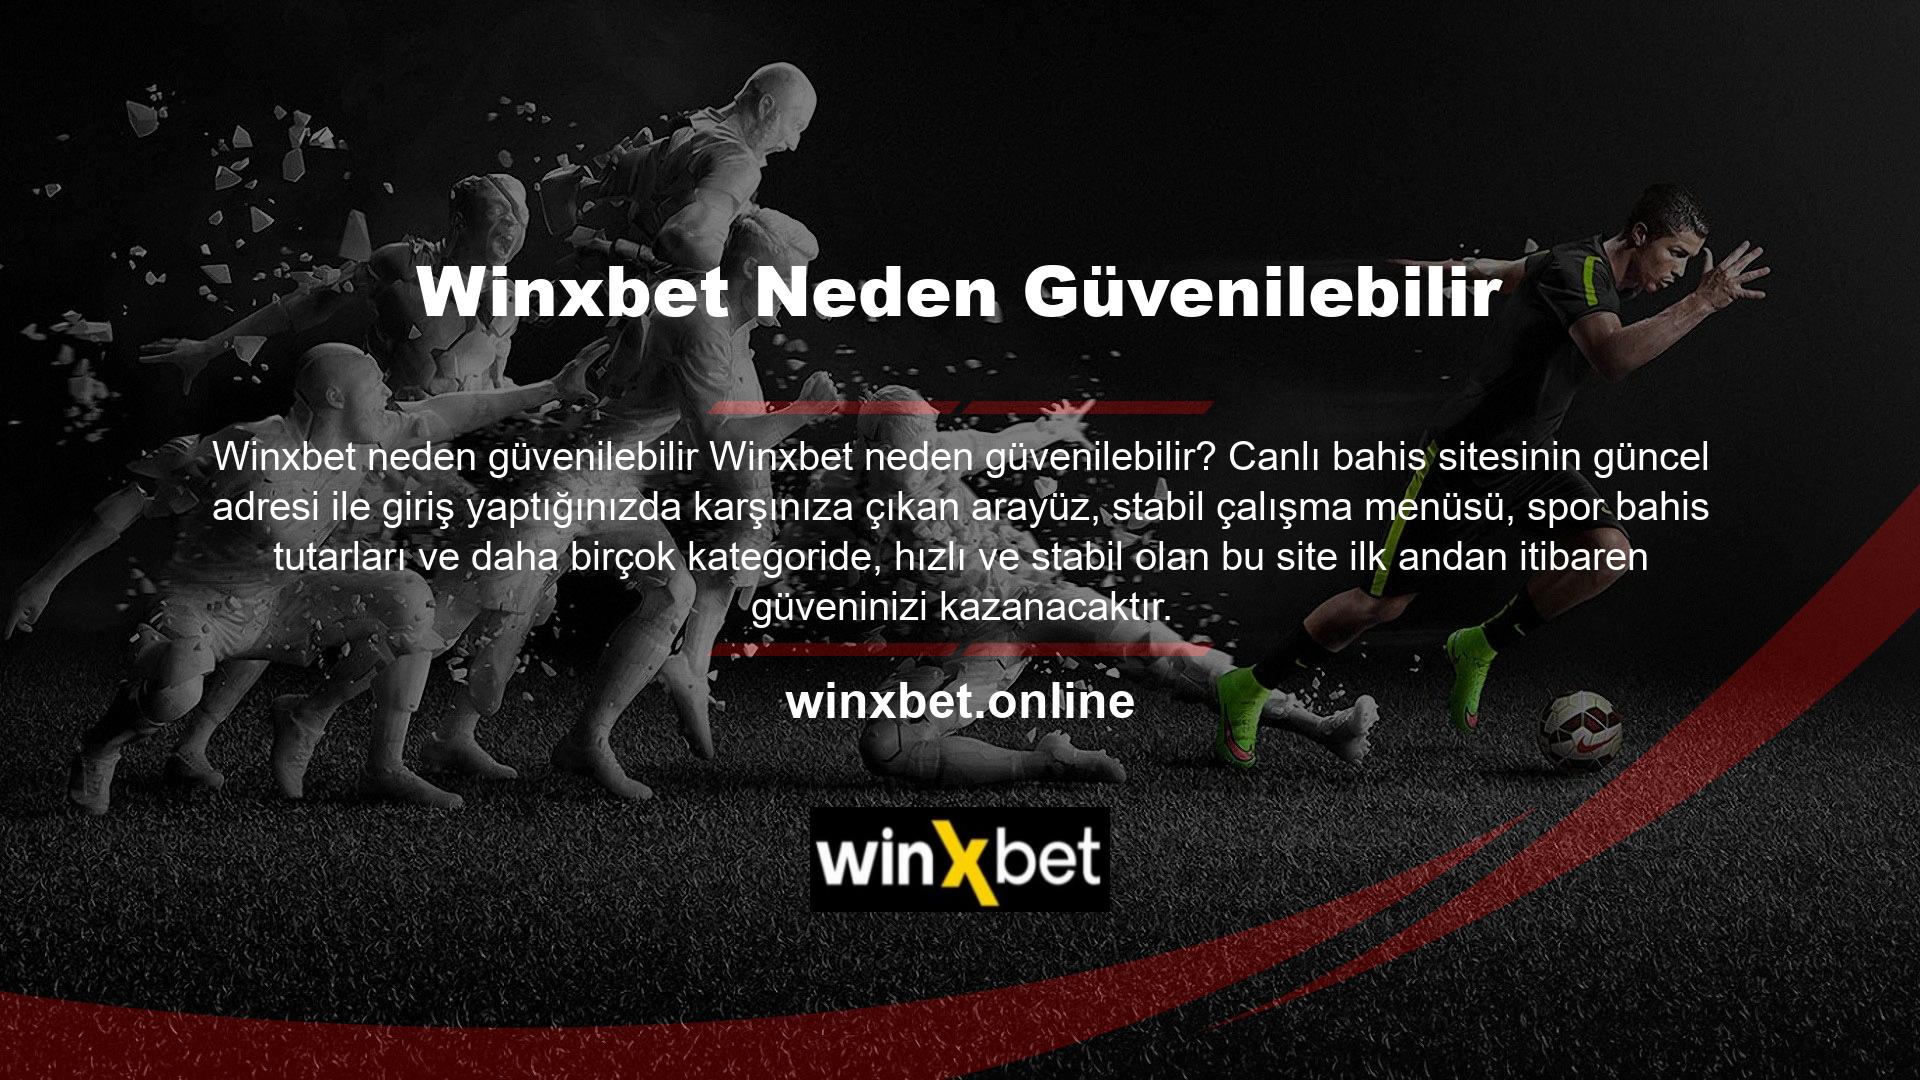 Winxbet Casino sitesi güvenilirliği ile ön plana çıkan bir bahis sitesidir